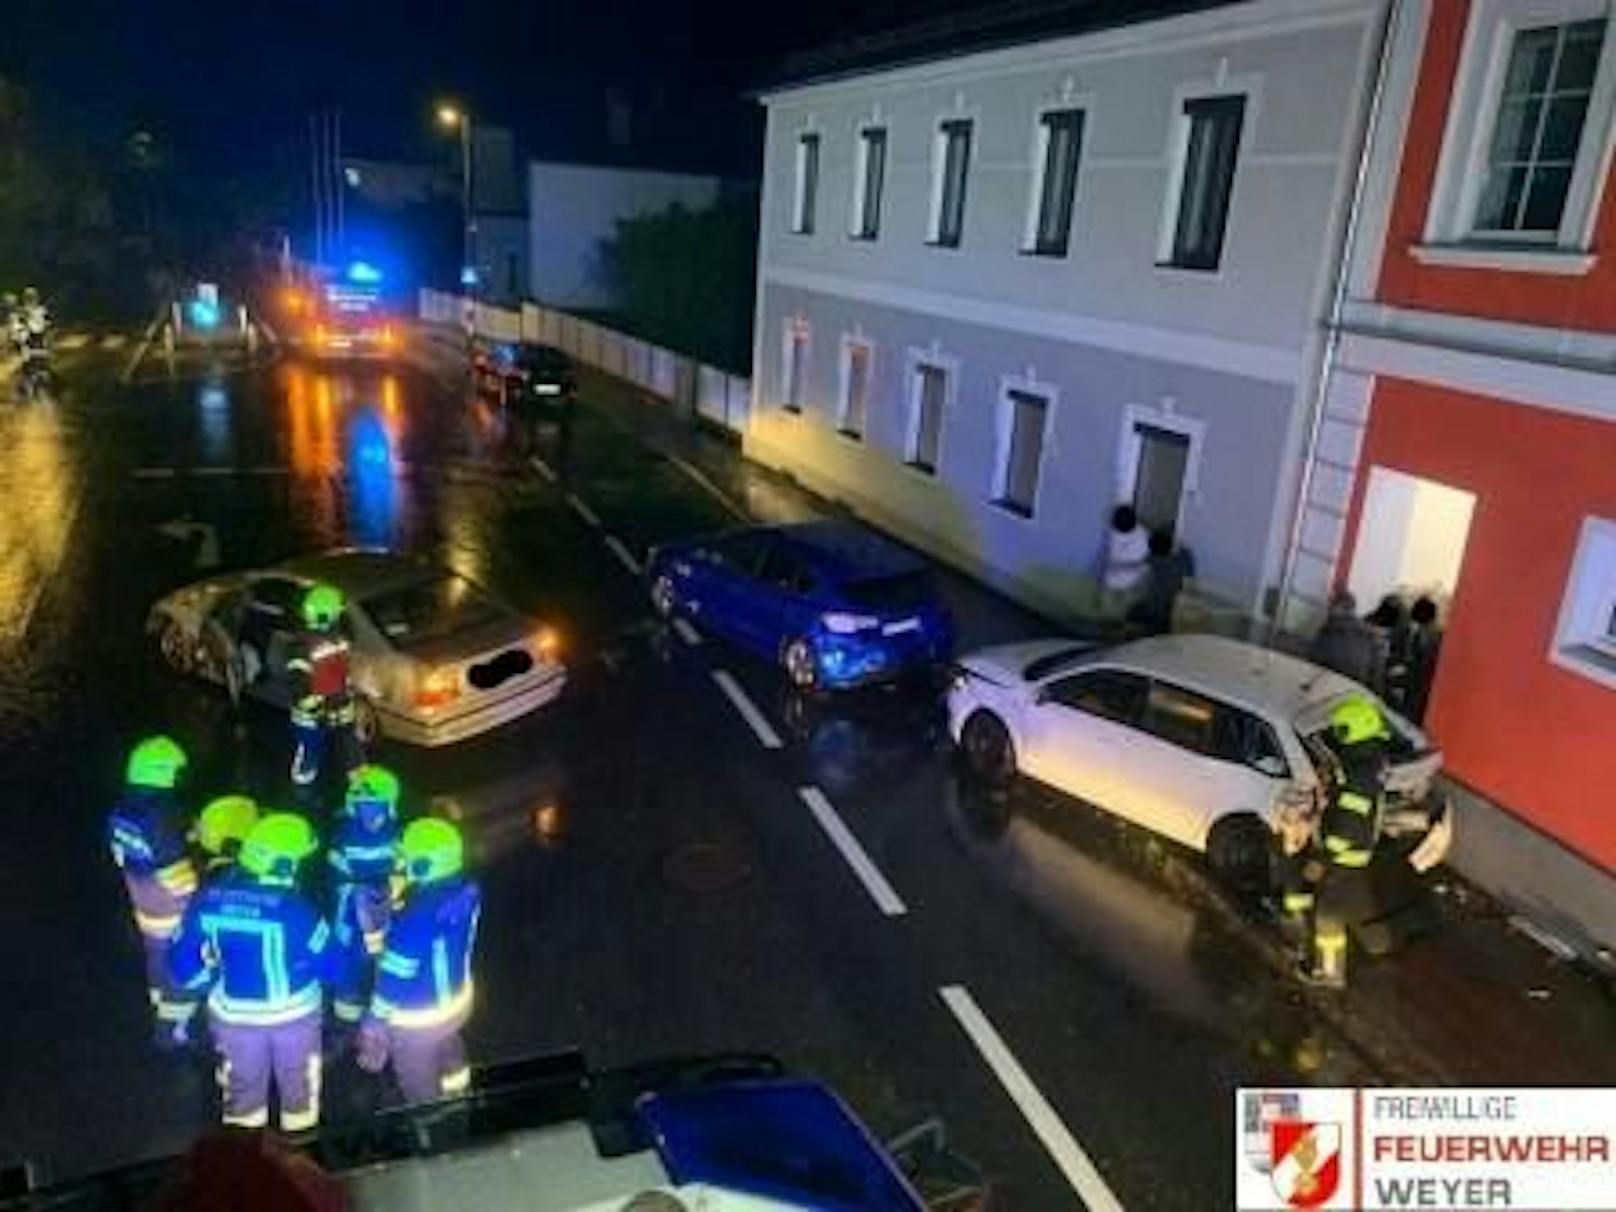 Bei dem Unfall in Weyer krachte ein Wagen gegen geparkte Autos, beschädigte eine Hausmauer.